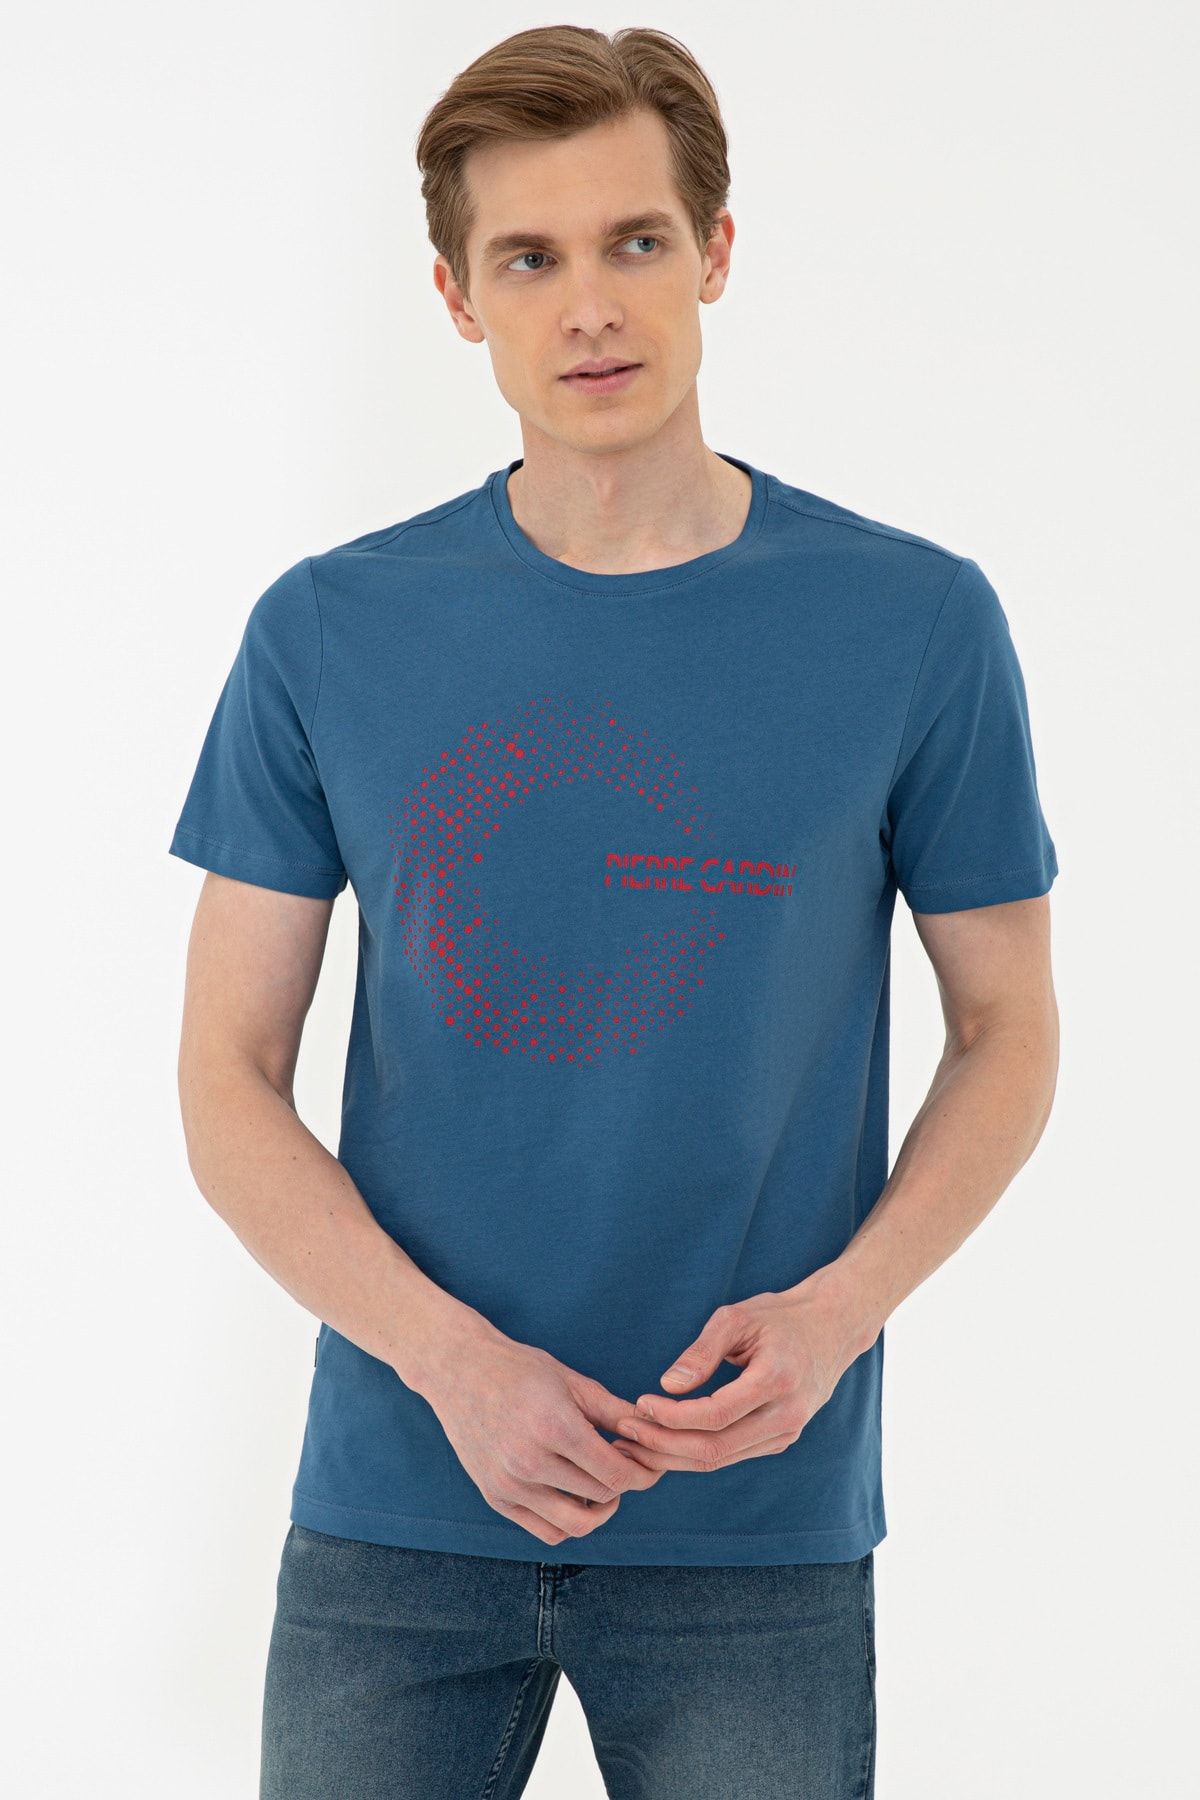 Pierre Cardin Mavi Slim Fit Bisiklet Yaka T-Shirt